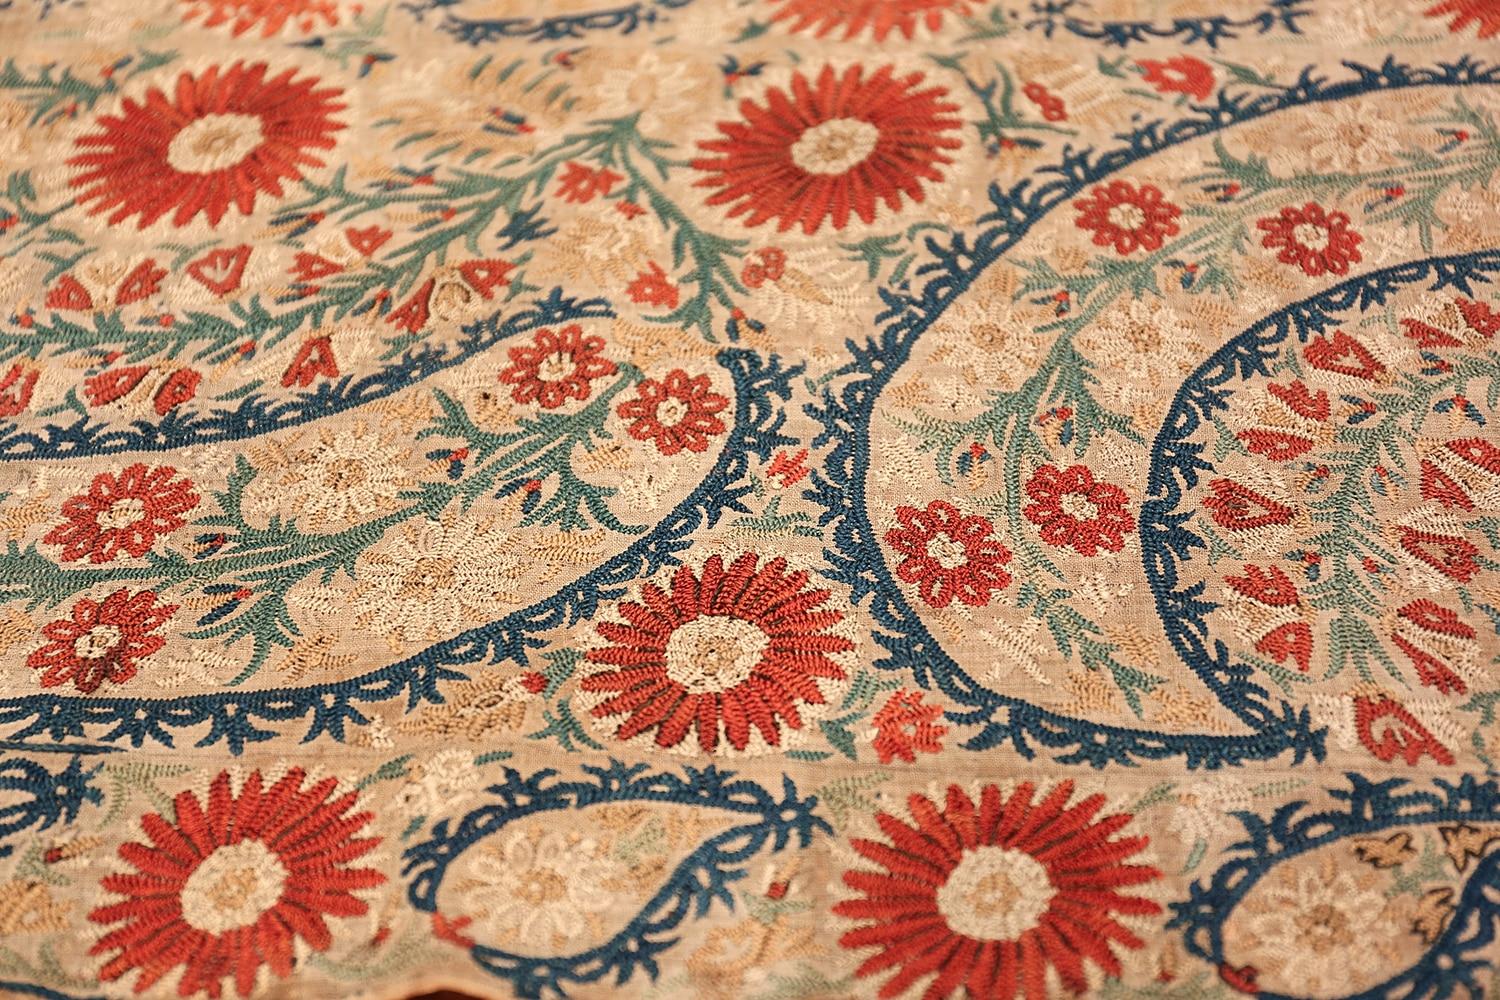 Broderie textile ottomane ancienne, à la fois raffinée et rustique, Pays d'origine : Turquie, Circa Date : 17ème siècle